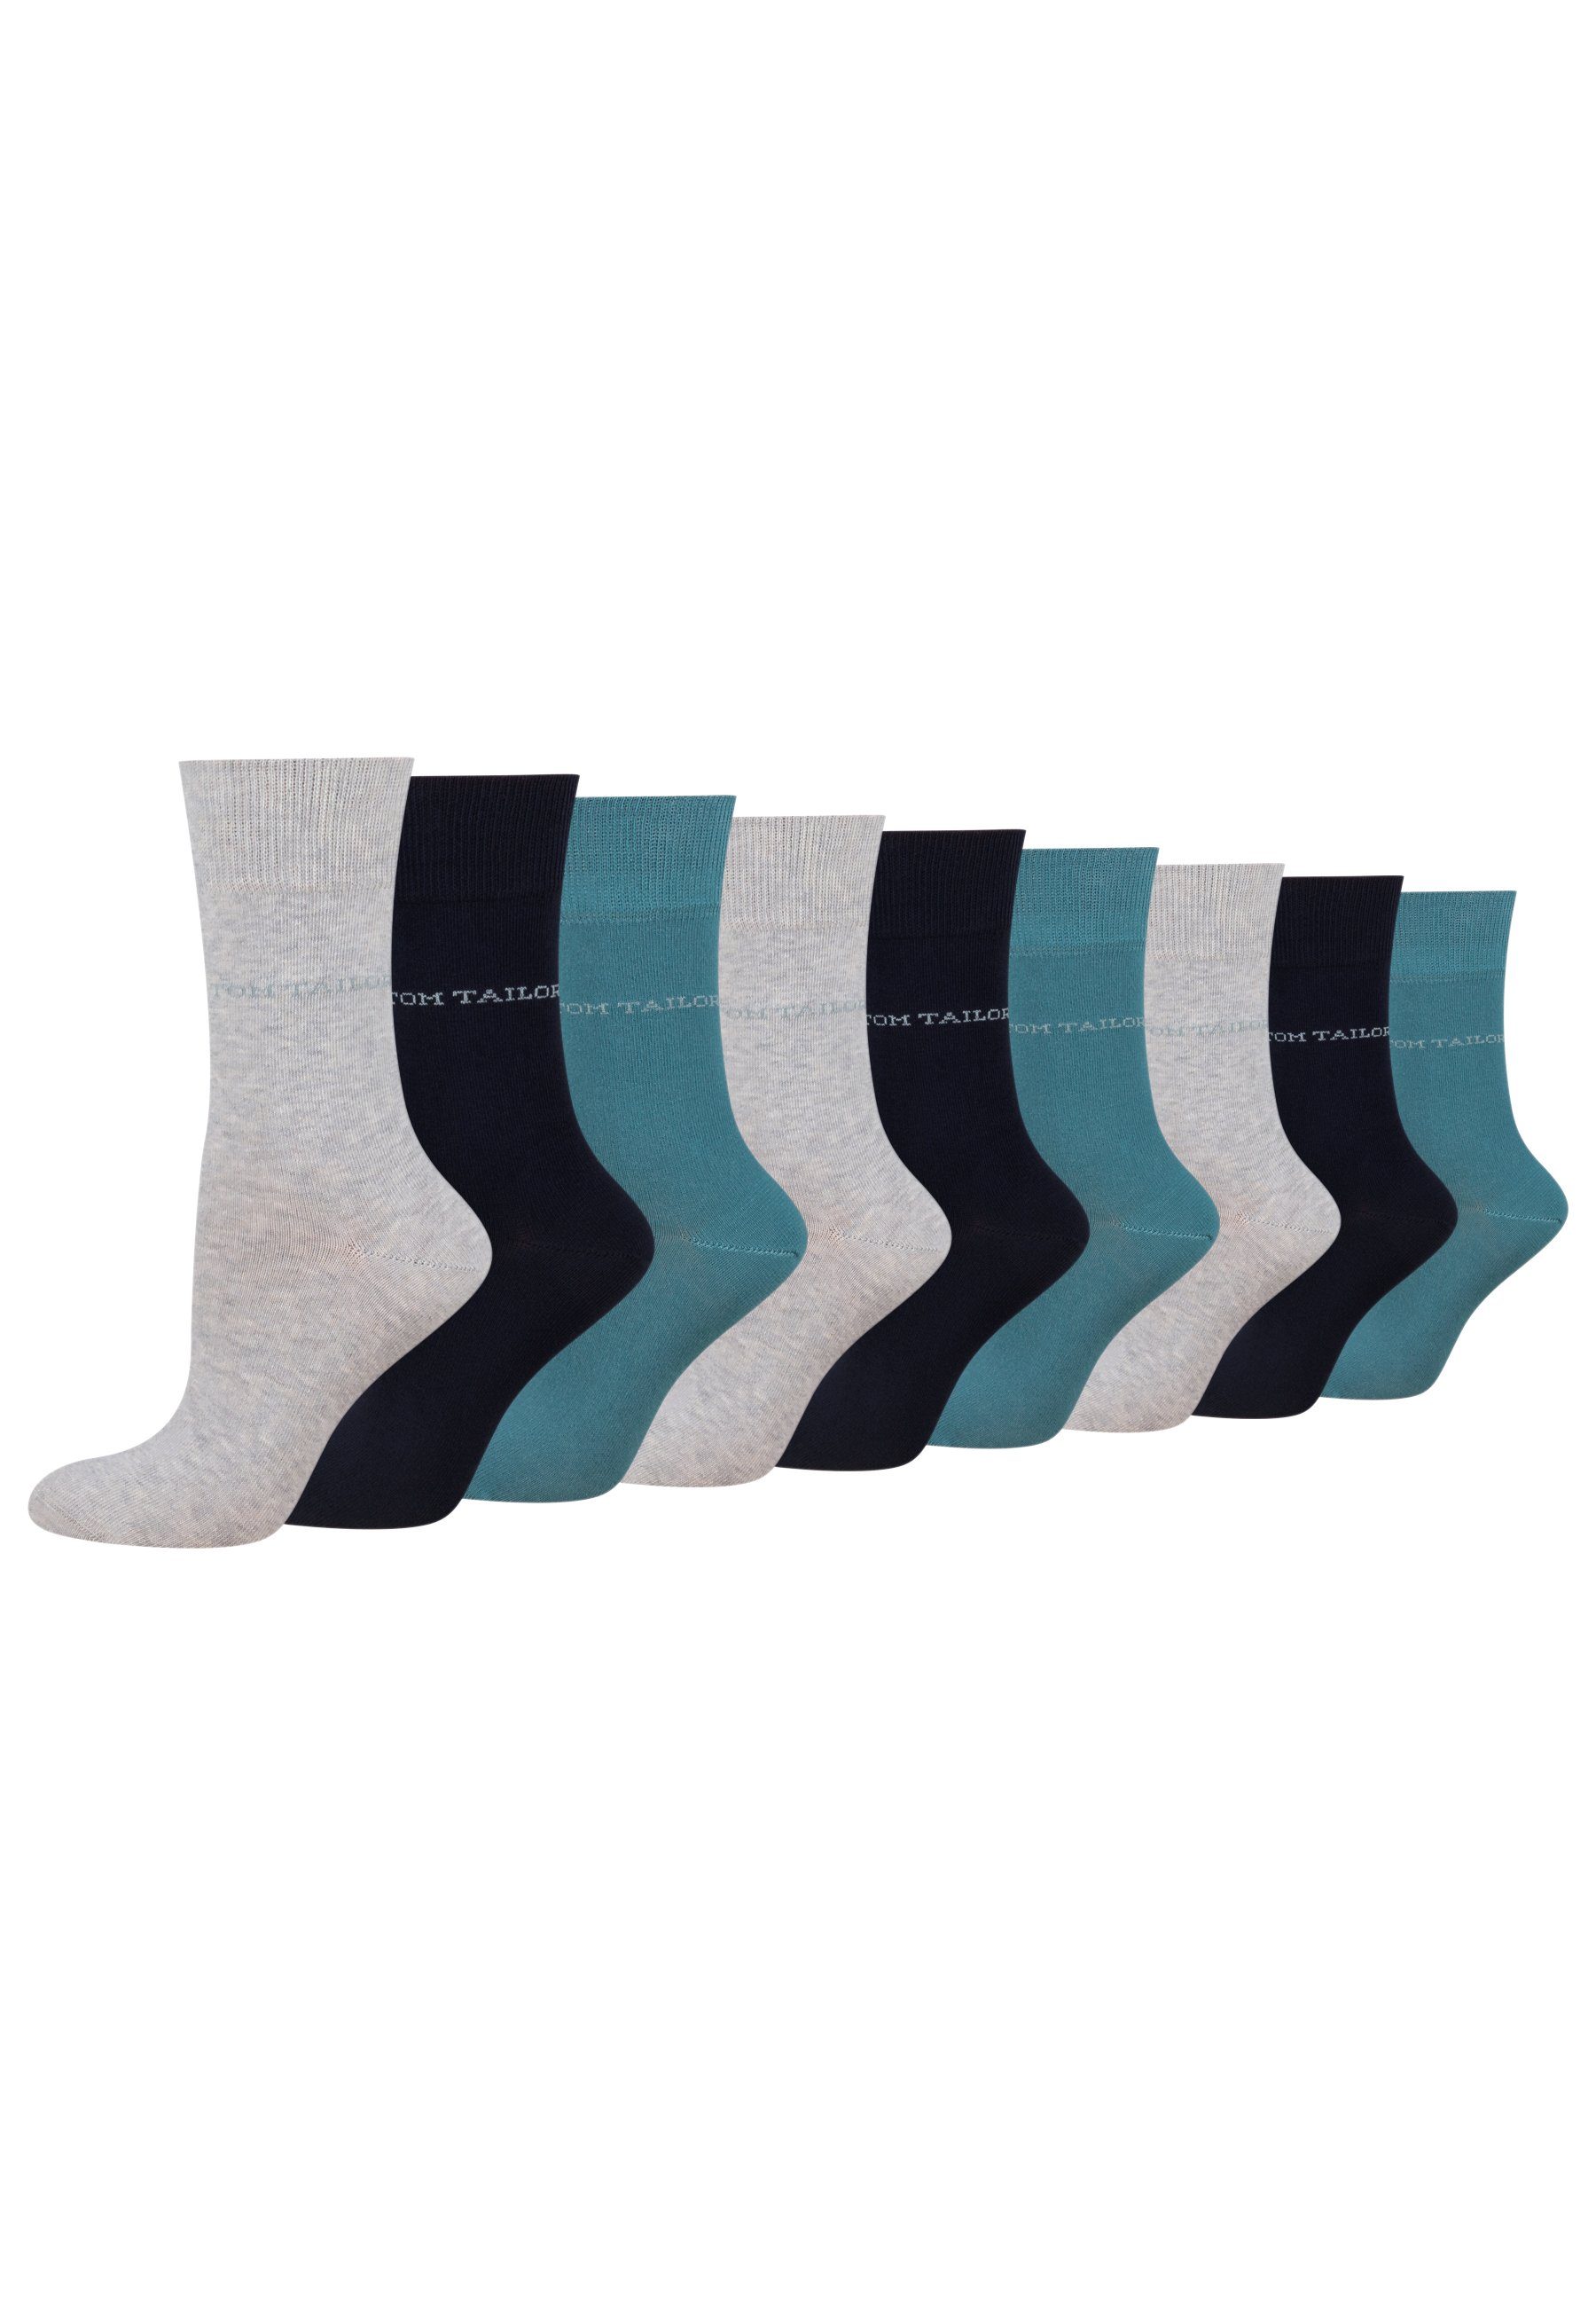 TOM TAILOR Socken 9609820042_9 TOM TAILOR Socken Damen – Baumwollsocken für Alltag und Freizeit 9 Paar warmgrey | Socken